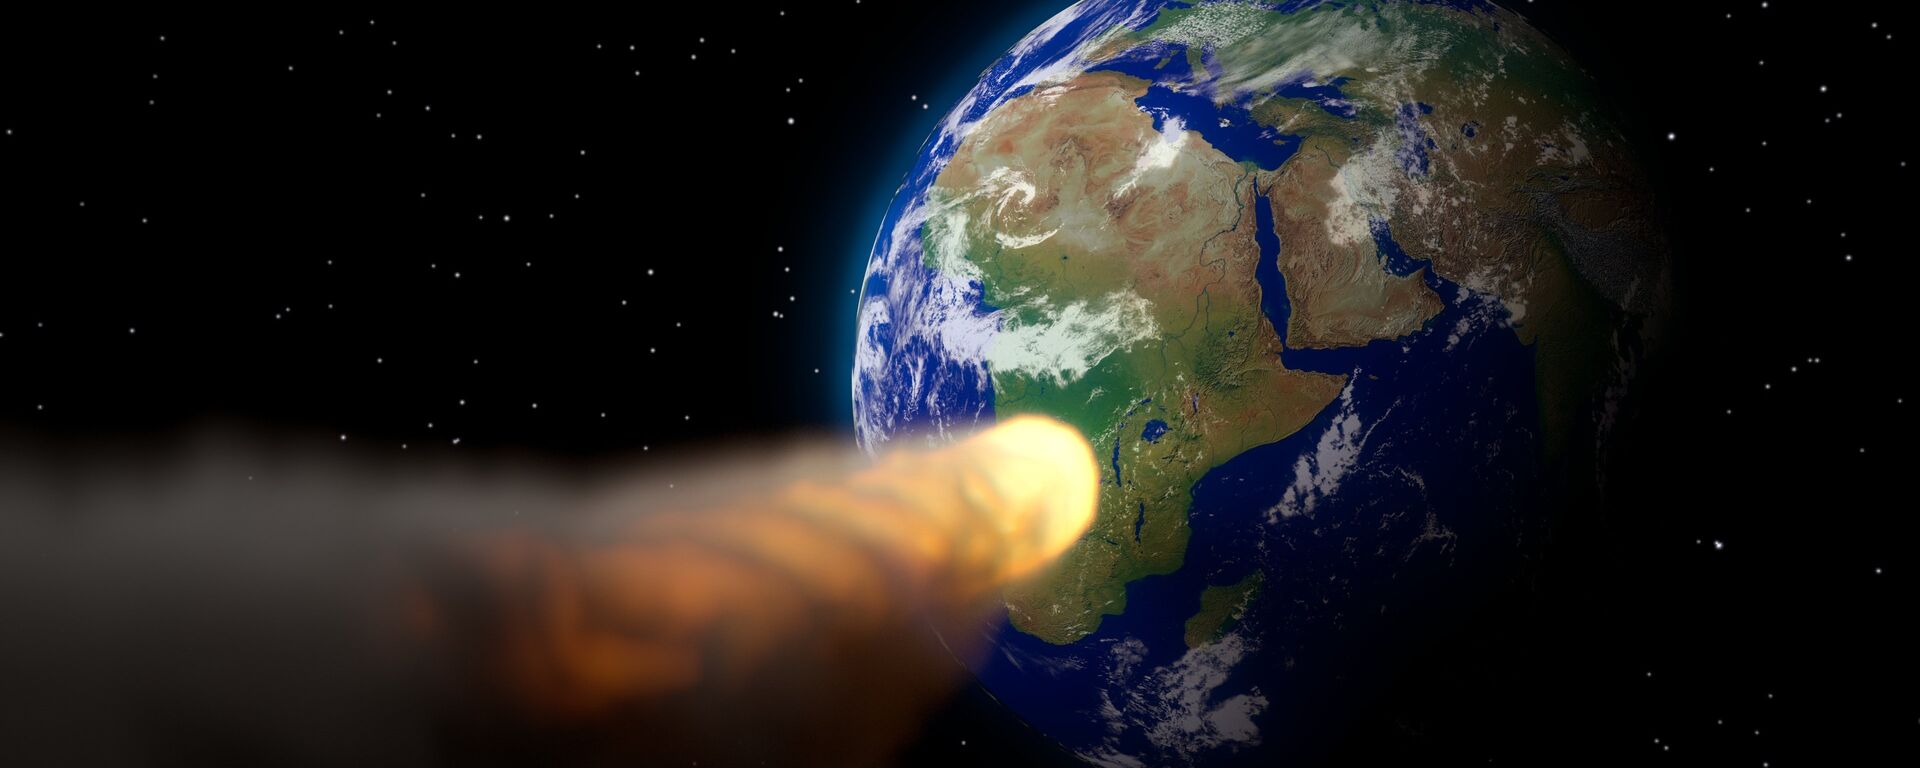 Un asteroide (ilustración) - Sputnik Mundo, 1920, 30.06.2017